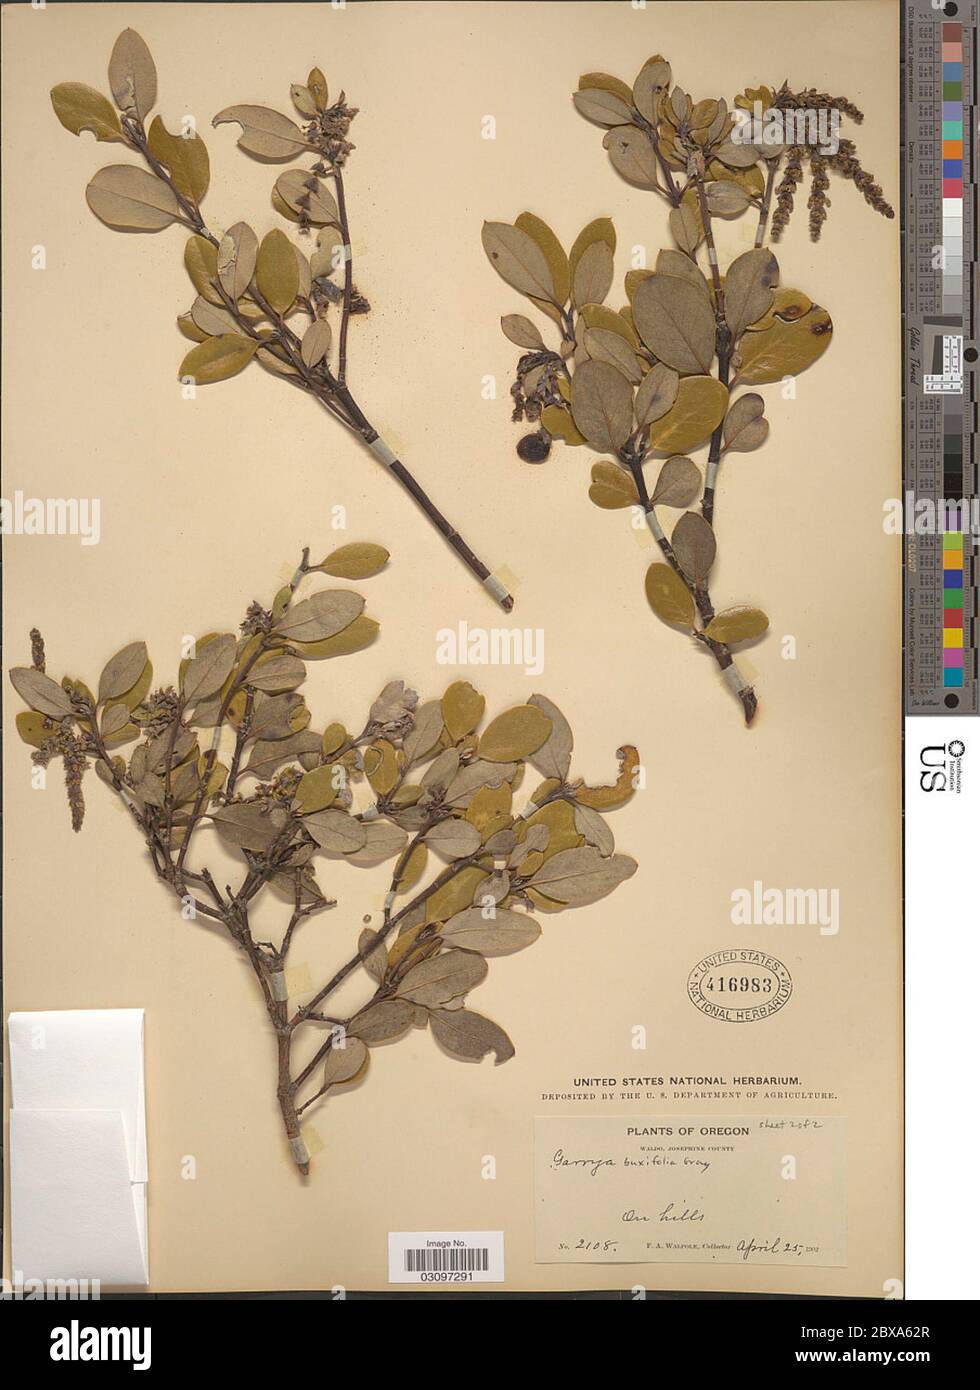 Garrya buxifolia A Gray Garrya buxifolia A Gray. Stock Photo